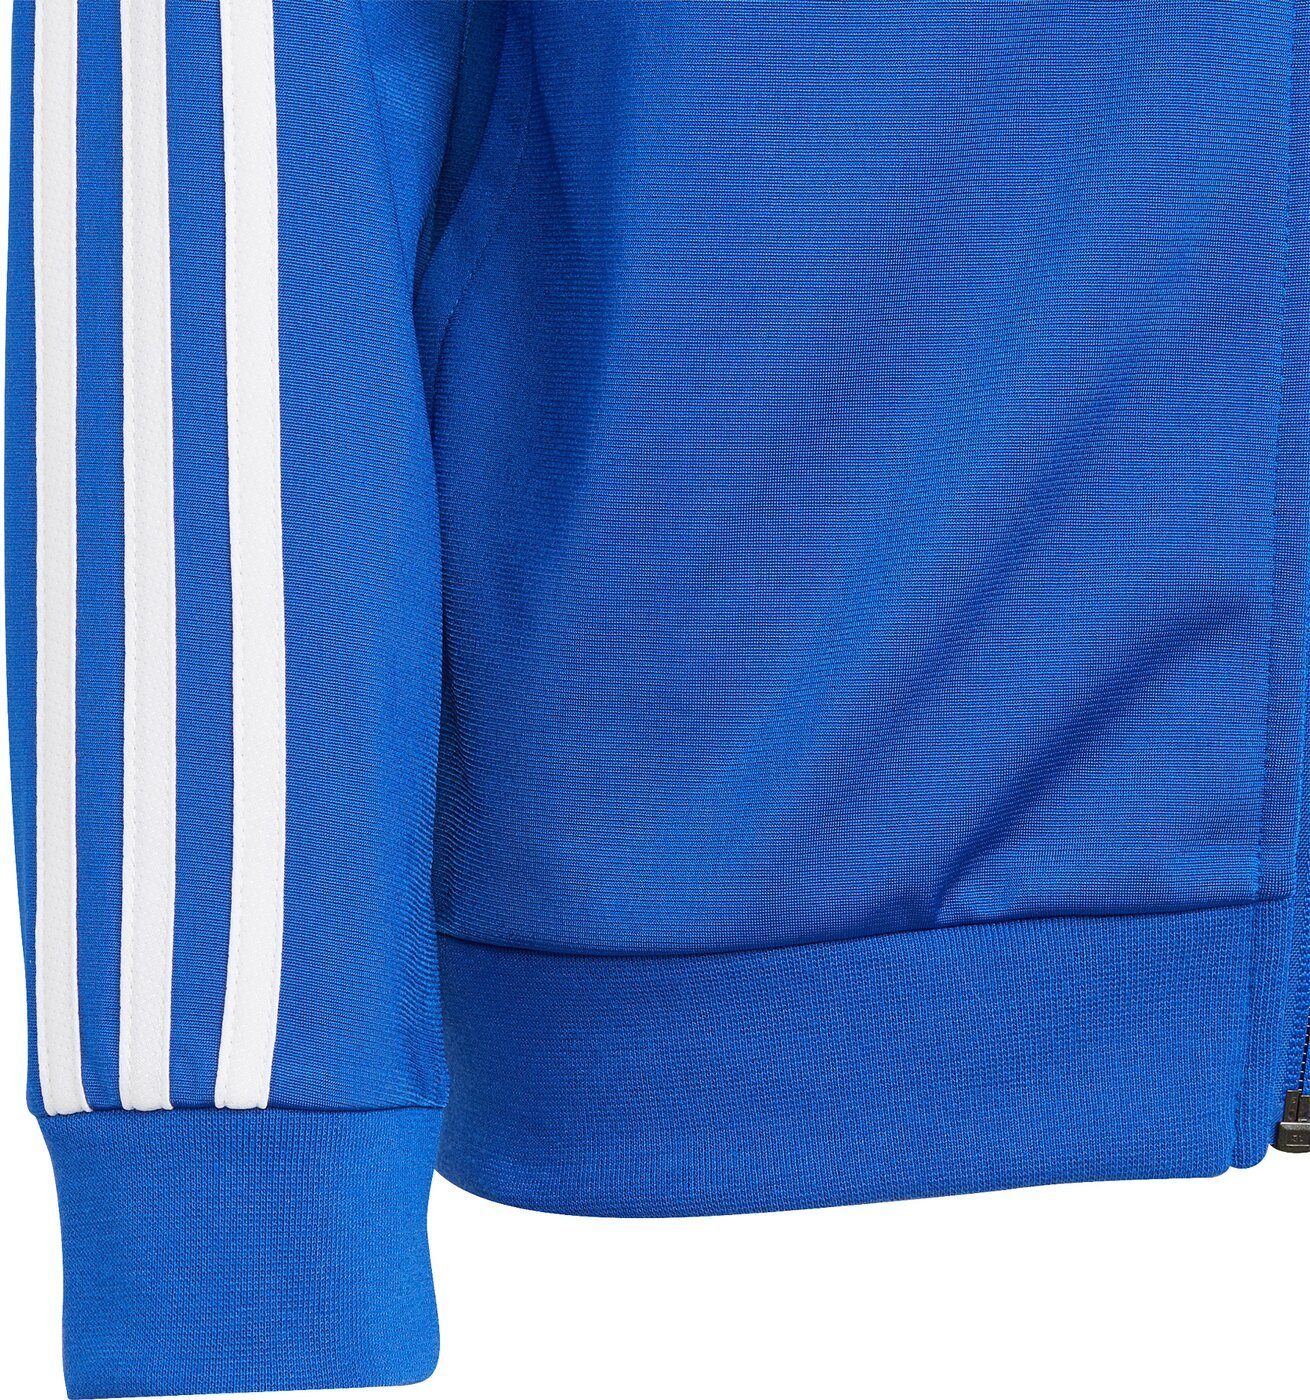 BOBLUE/WHITE adidas TS B Sportswear TEAM Trainingsanzug